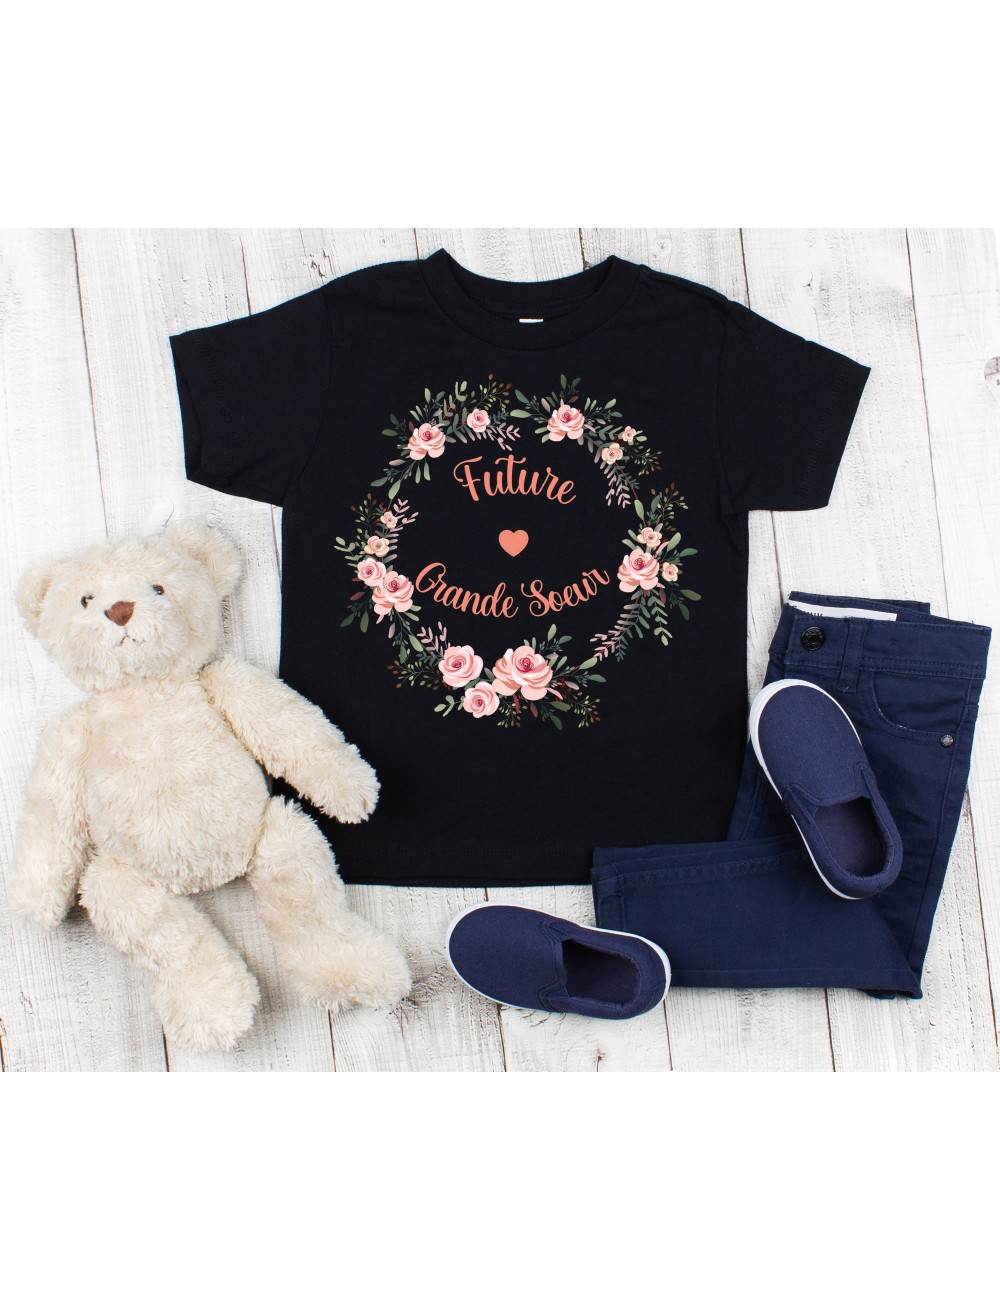 T-Shirt noir pour enfant fille future grande soeur couronne végétale de fleurs 